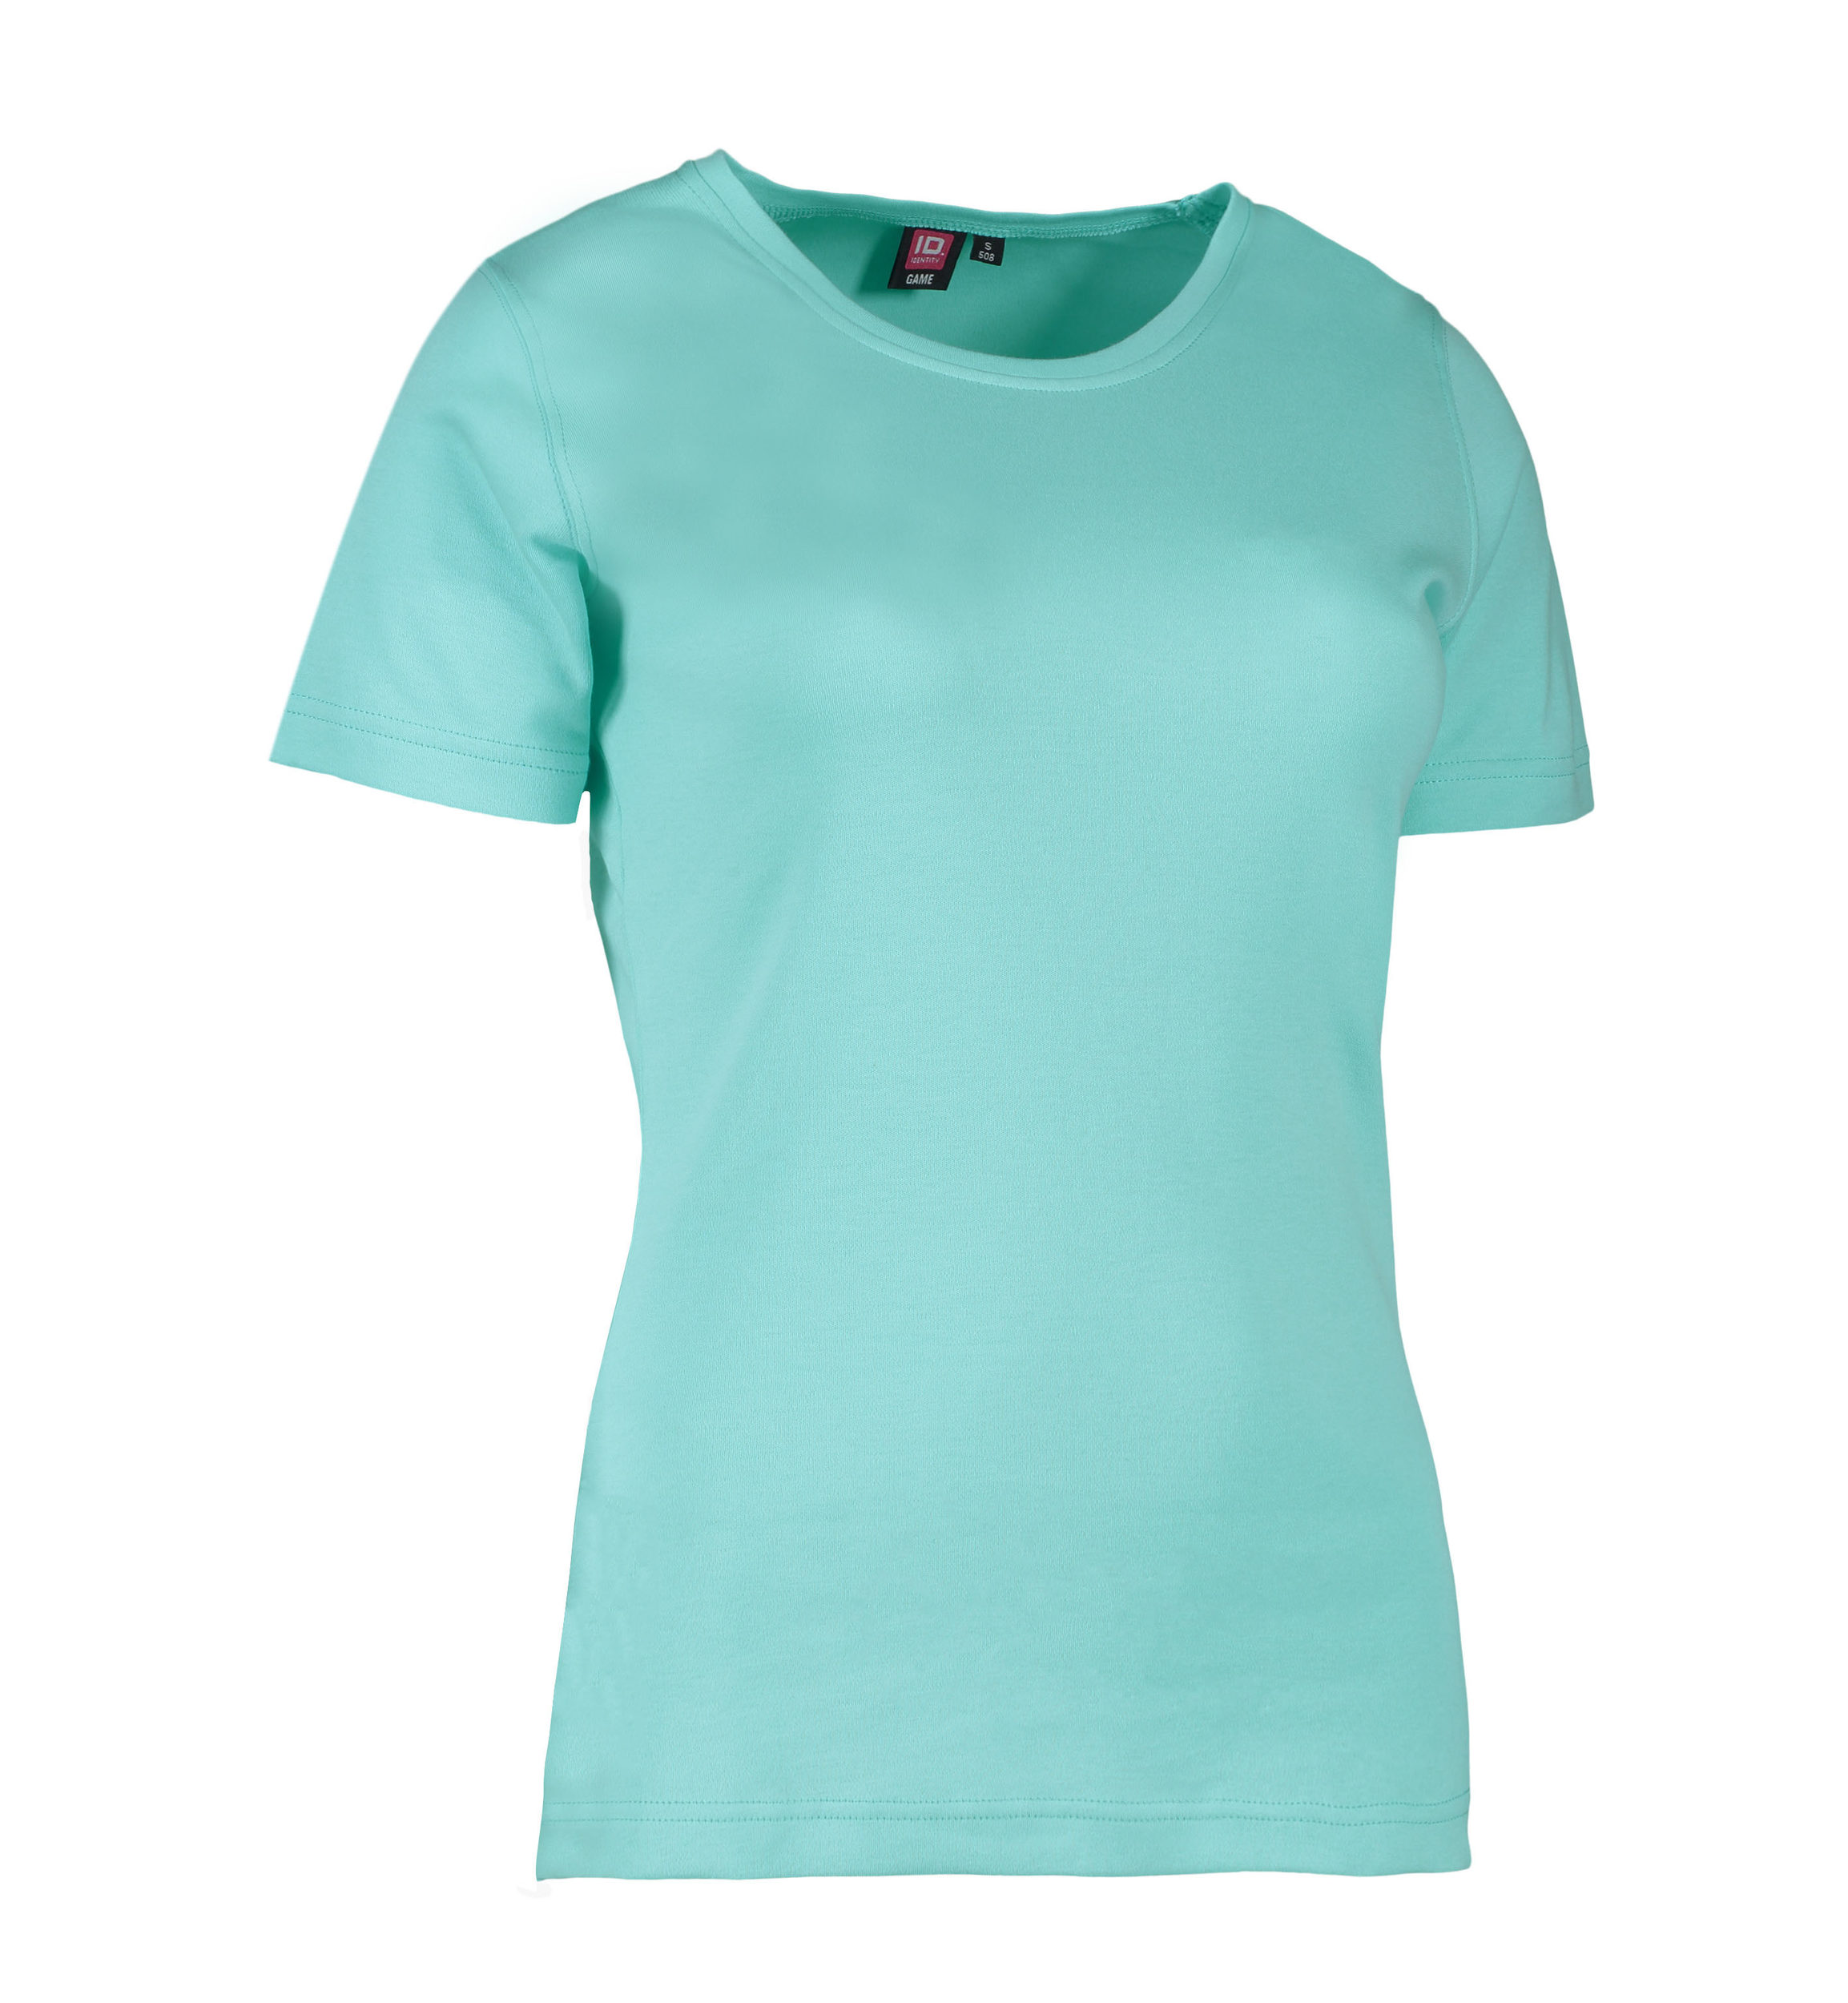 Se Mint farvet dame t-shirt med rund hals - M hos Sygeplejebutikken.dk